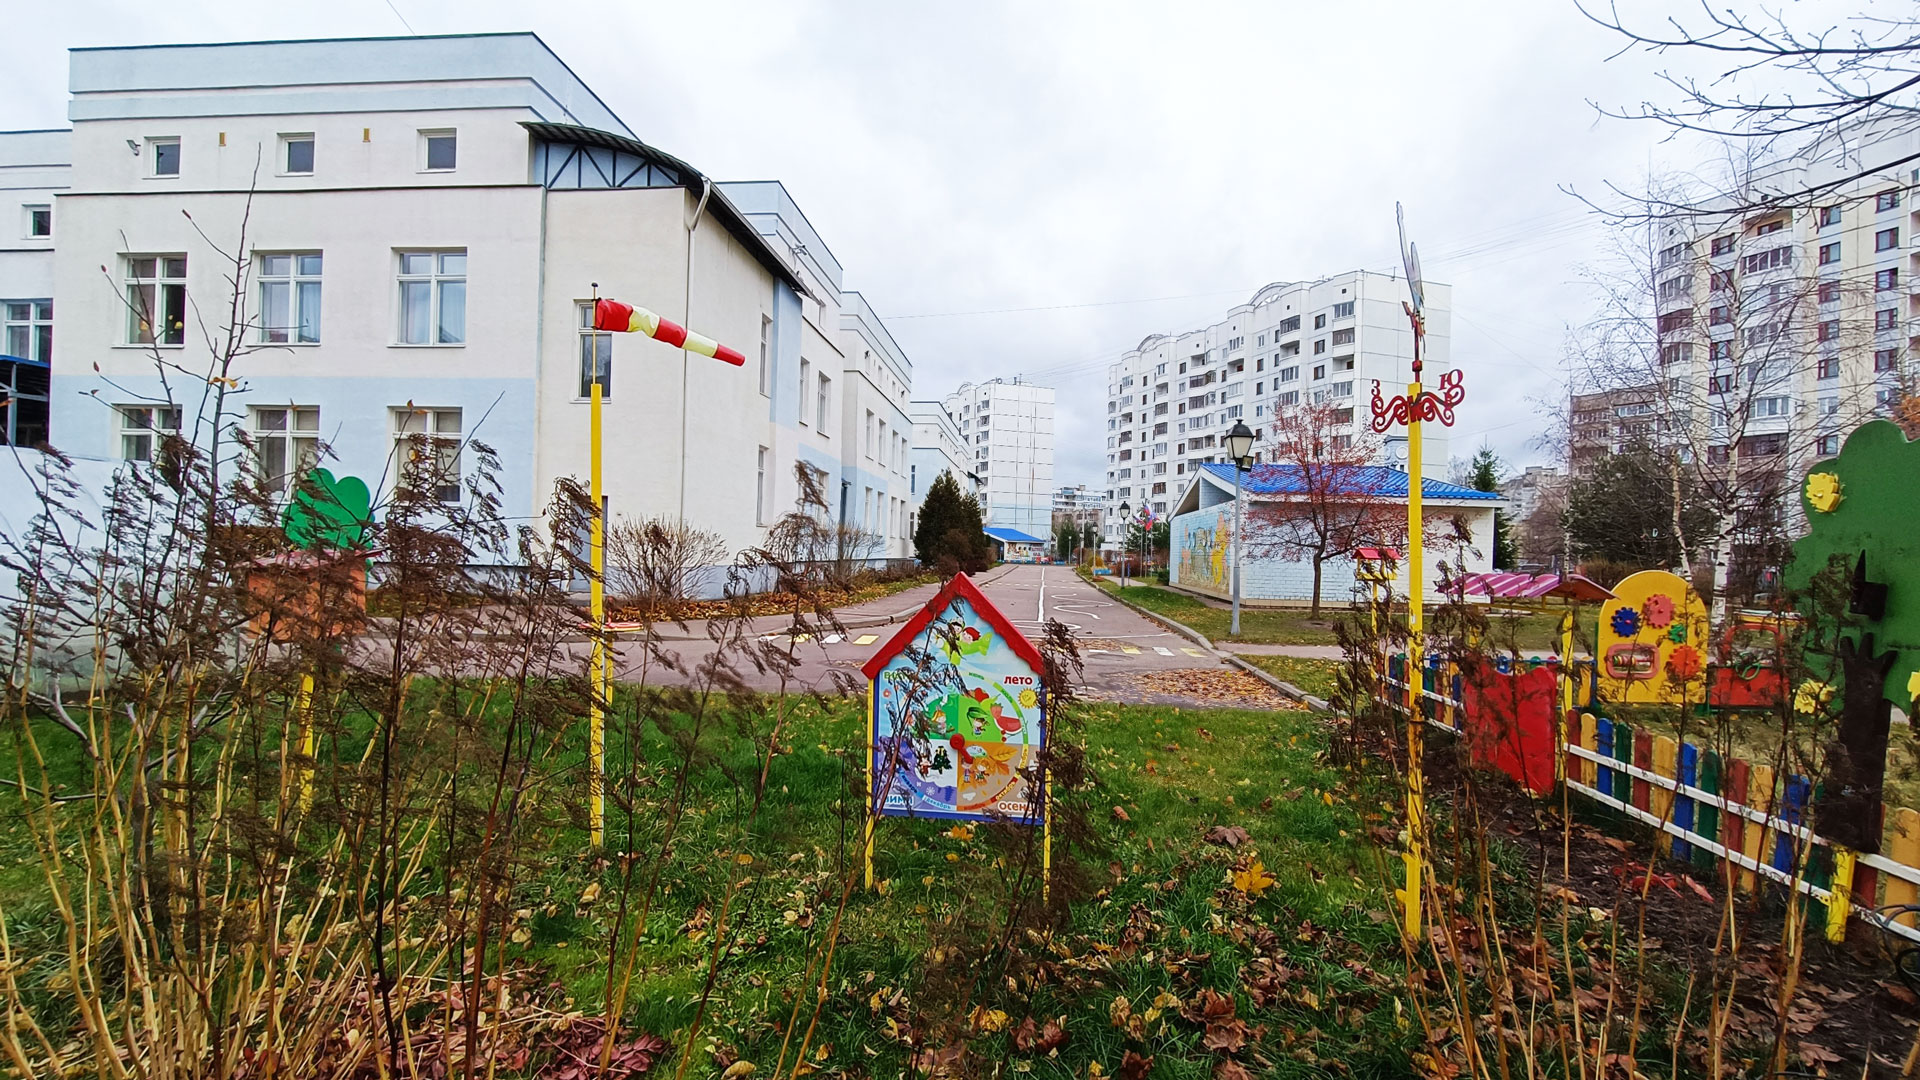 Детский сад 100 Ярославль: общий вид здания и территории.